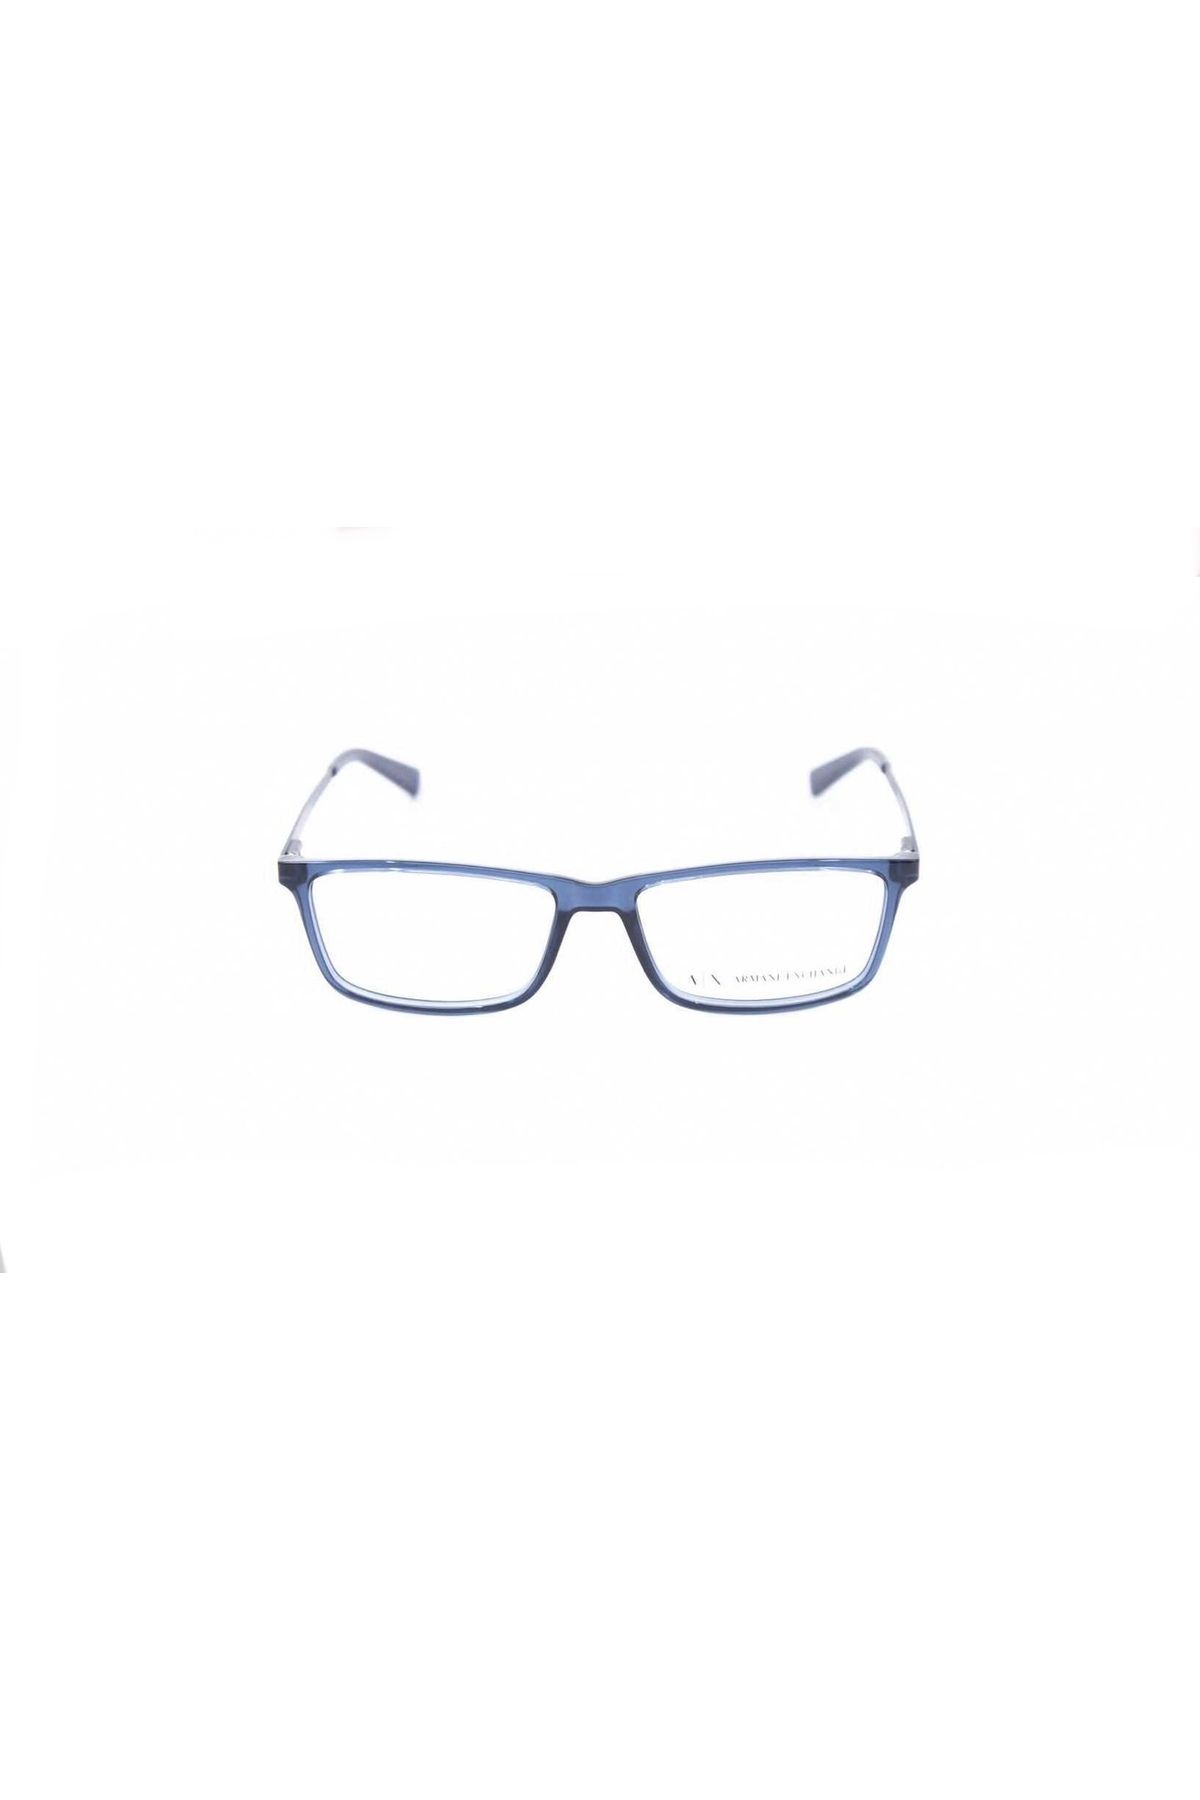 Armani Exchange AX3027 8238 55 mavi ışık korumalı gözlük